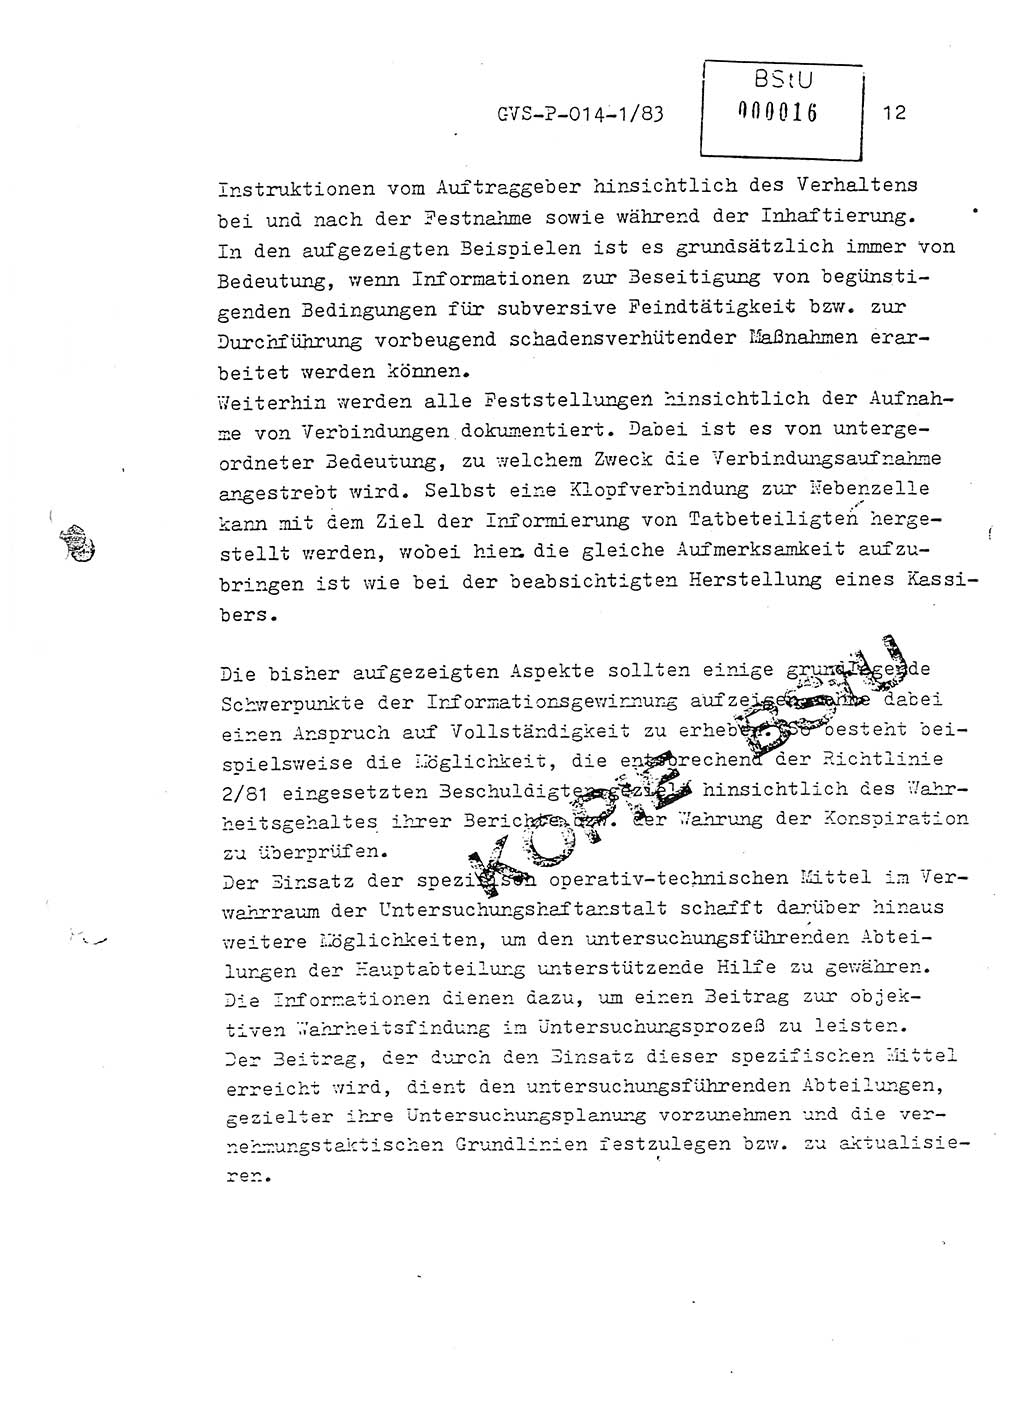 Fachschulabschlußarbeit Leutnant Dirk Autentrieb (HA Ⅸ/AKG), Ministerium für Staatssicherheit (MfS) [Deutsche Demokratische Republik (DDR)], Hauptabteilung (HA) Ⅸ, Geheime Verschlußsache (GVS) P-014-1/83, Berlin 1983, Blatt 12 (FS-Abschl.-Arb. MfS DDR HA Ⅸ GVS P-014-1/83 1983, Bl. 12)